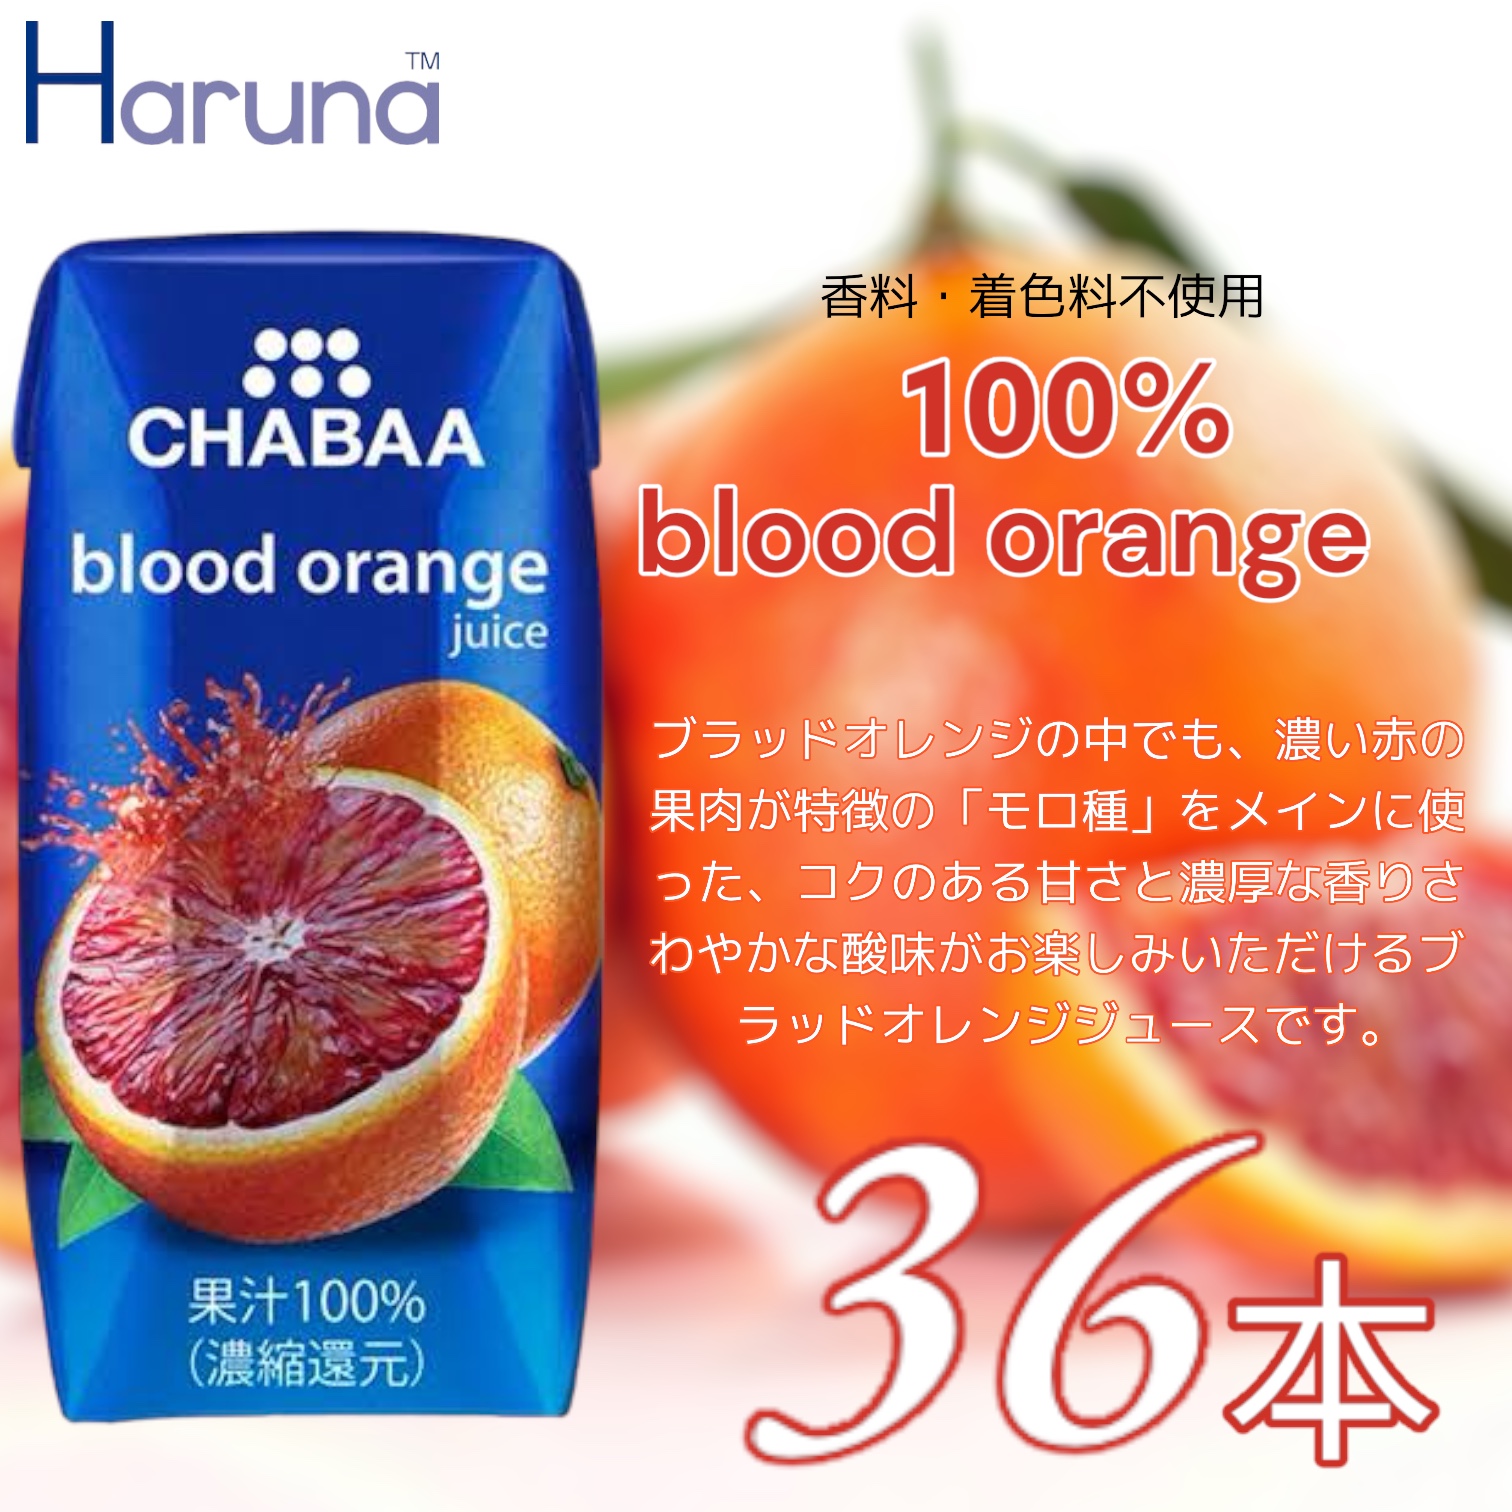 ハルナプロデュース CHABAA ブラッドオレンジ ジュース 180ml 100